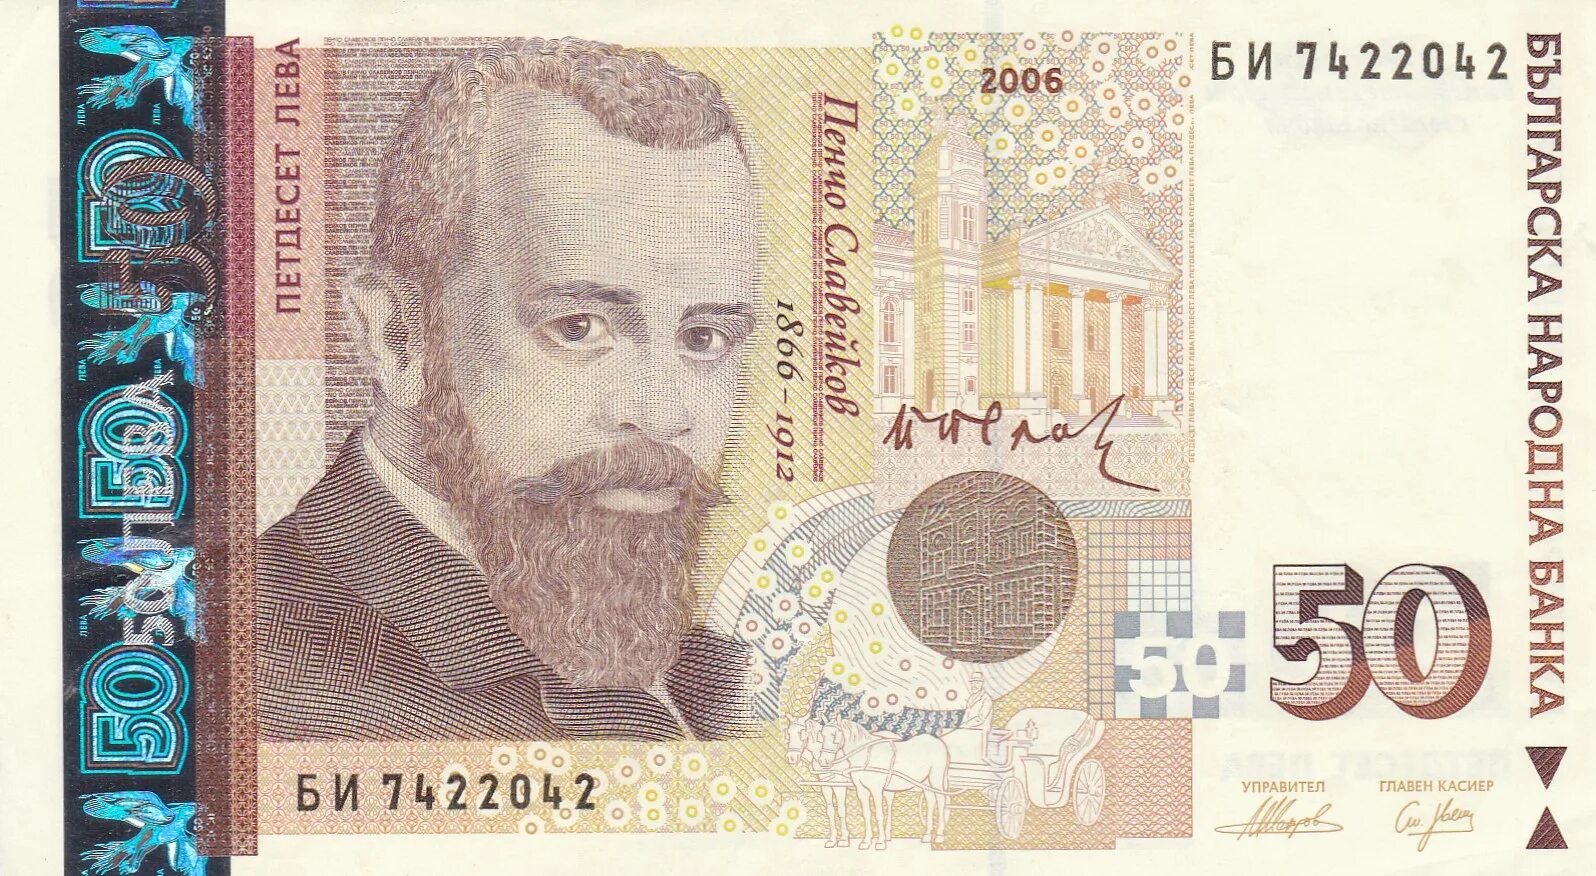 Болгария 50 левов 2006 БМ UNC. Болгарский Лев. Болгарский Лев банкноты. Национальная валюта Болгарии. Лев денежная единица